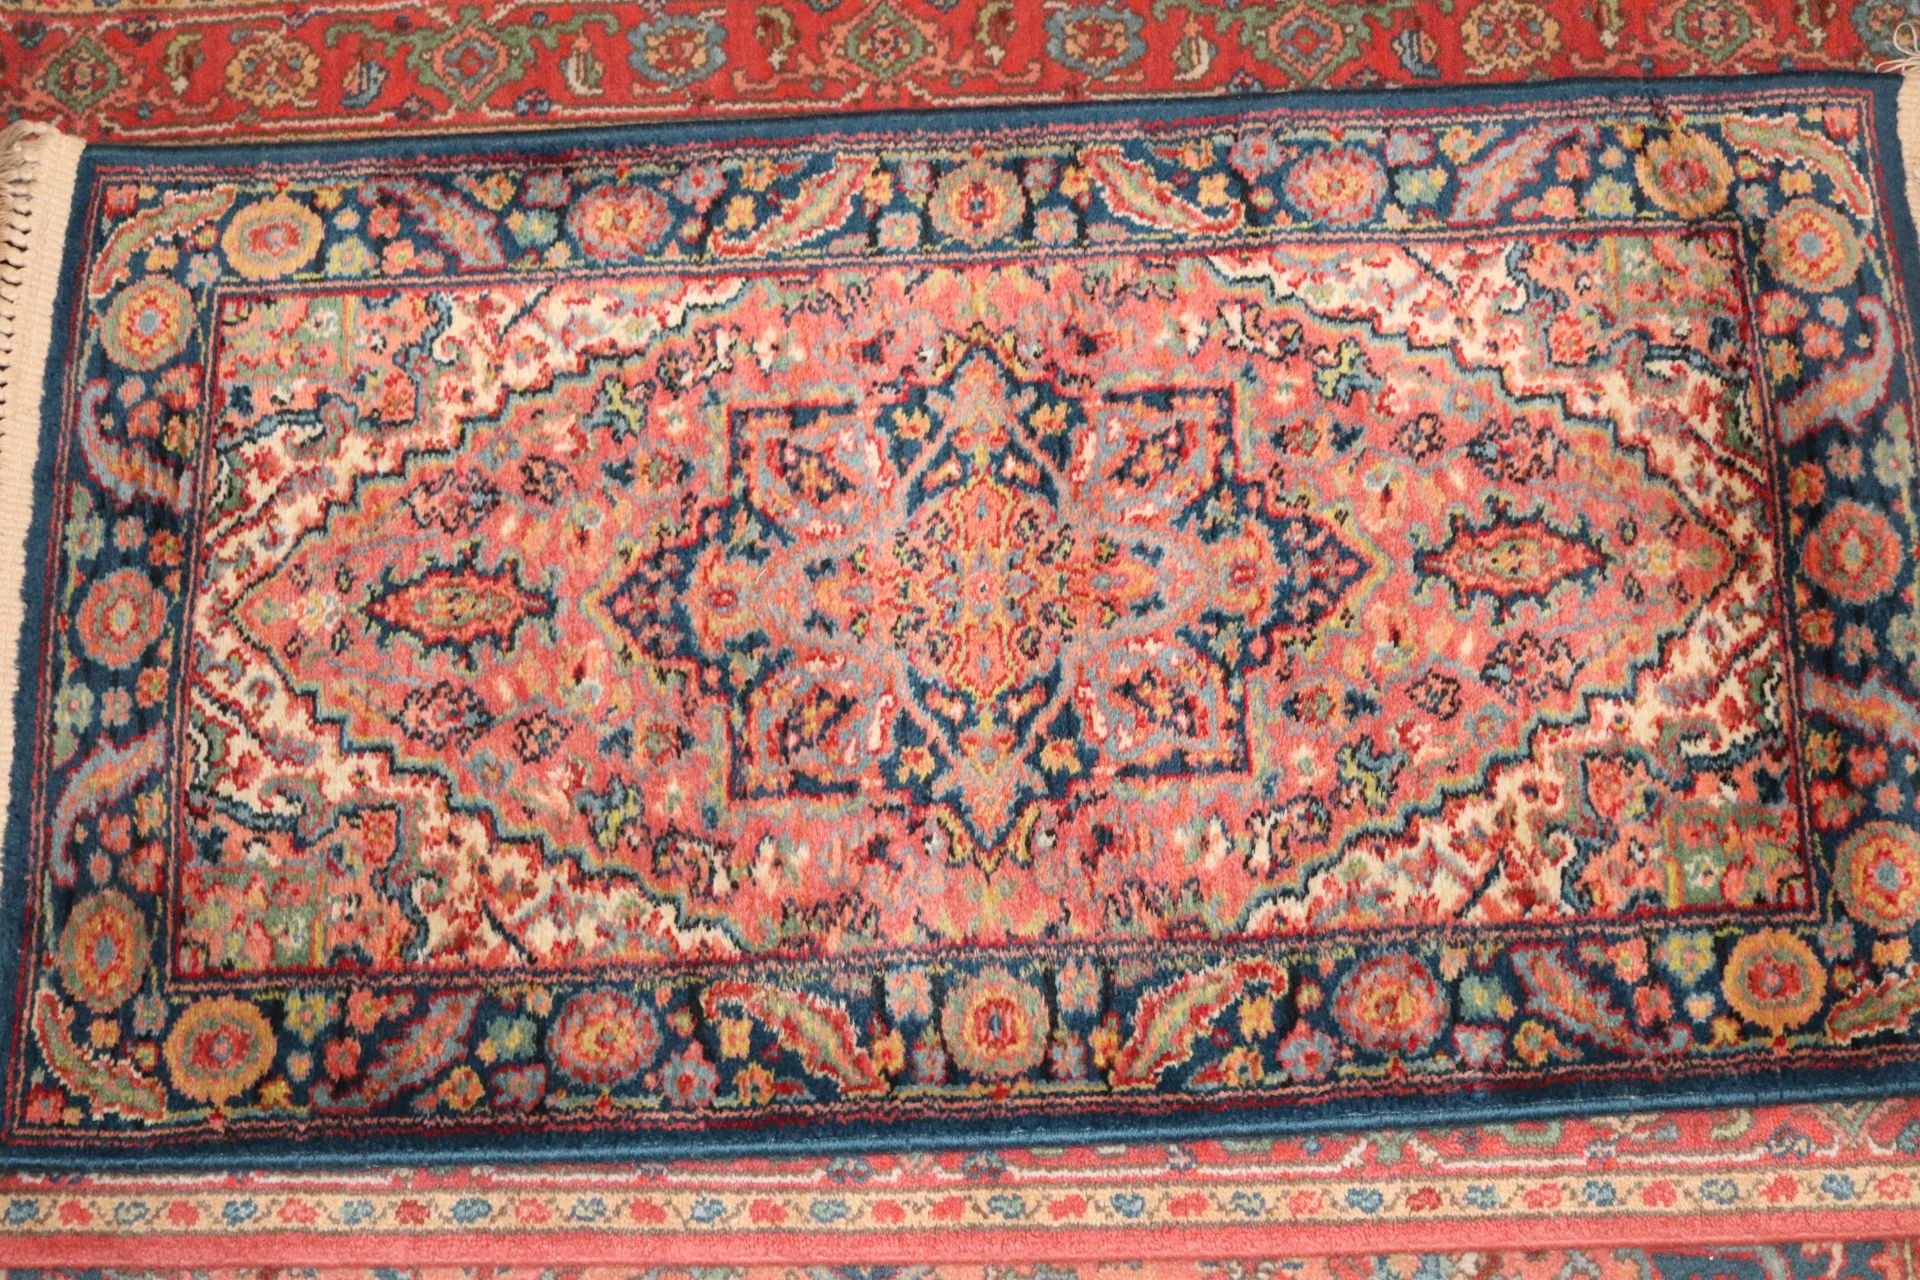 Oriental wool rug, 48" x 26", Karastan